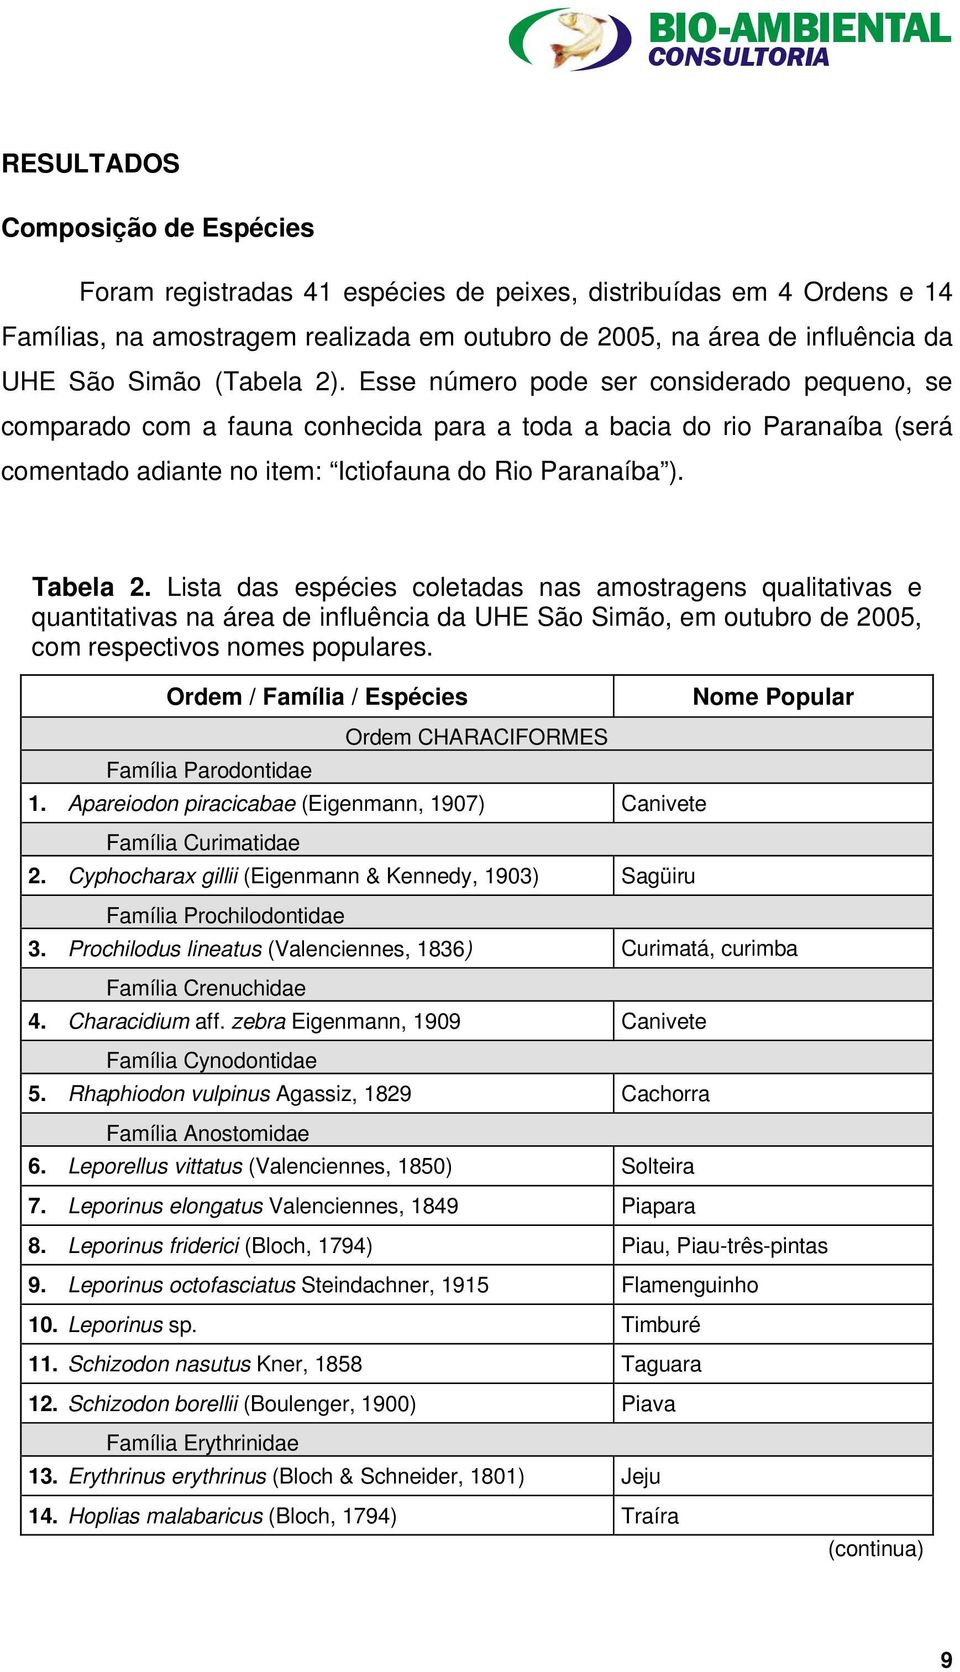 Lista das espécies coletadas nas amostragens qualitativas e quantitativas na área de influência da UHE São Simão, em outubro de 2005, com respectivos nomes populares.